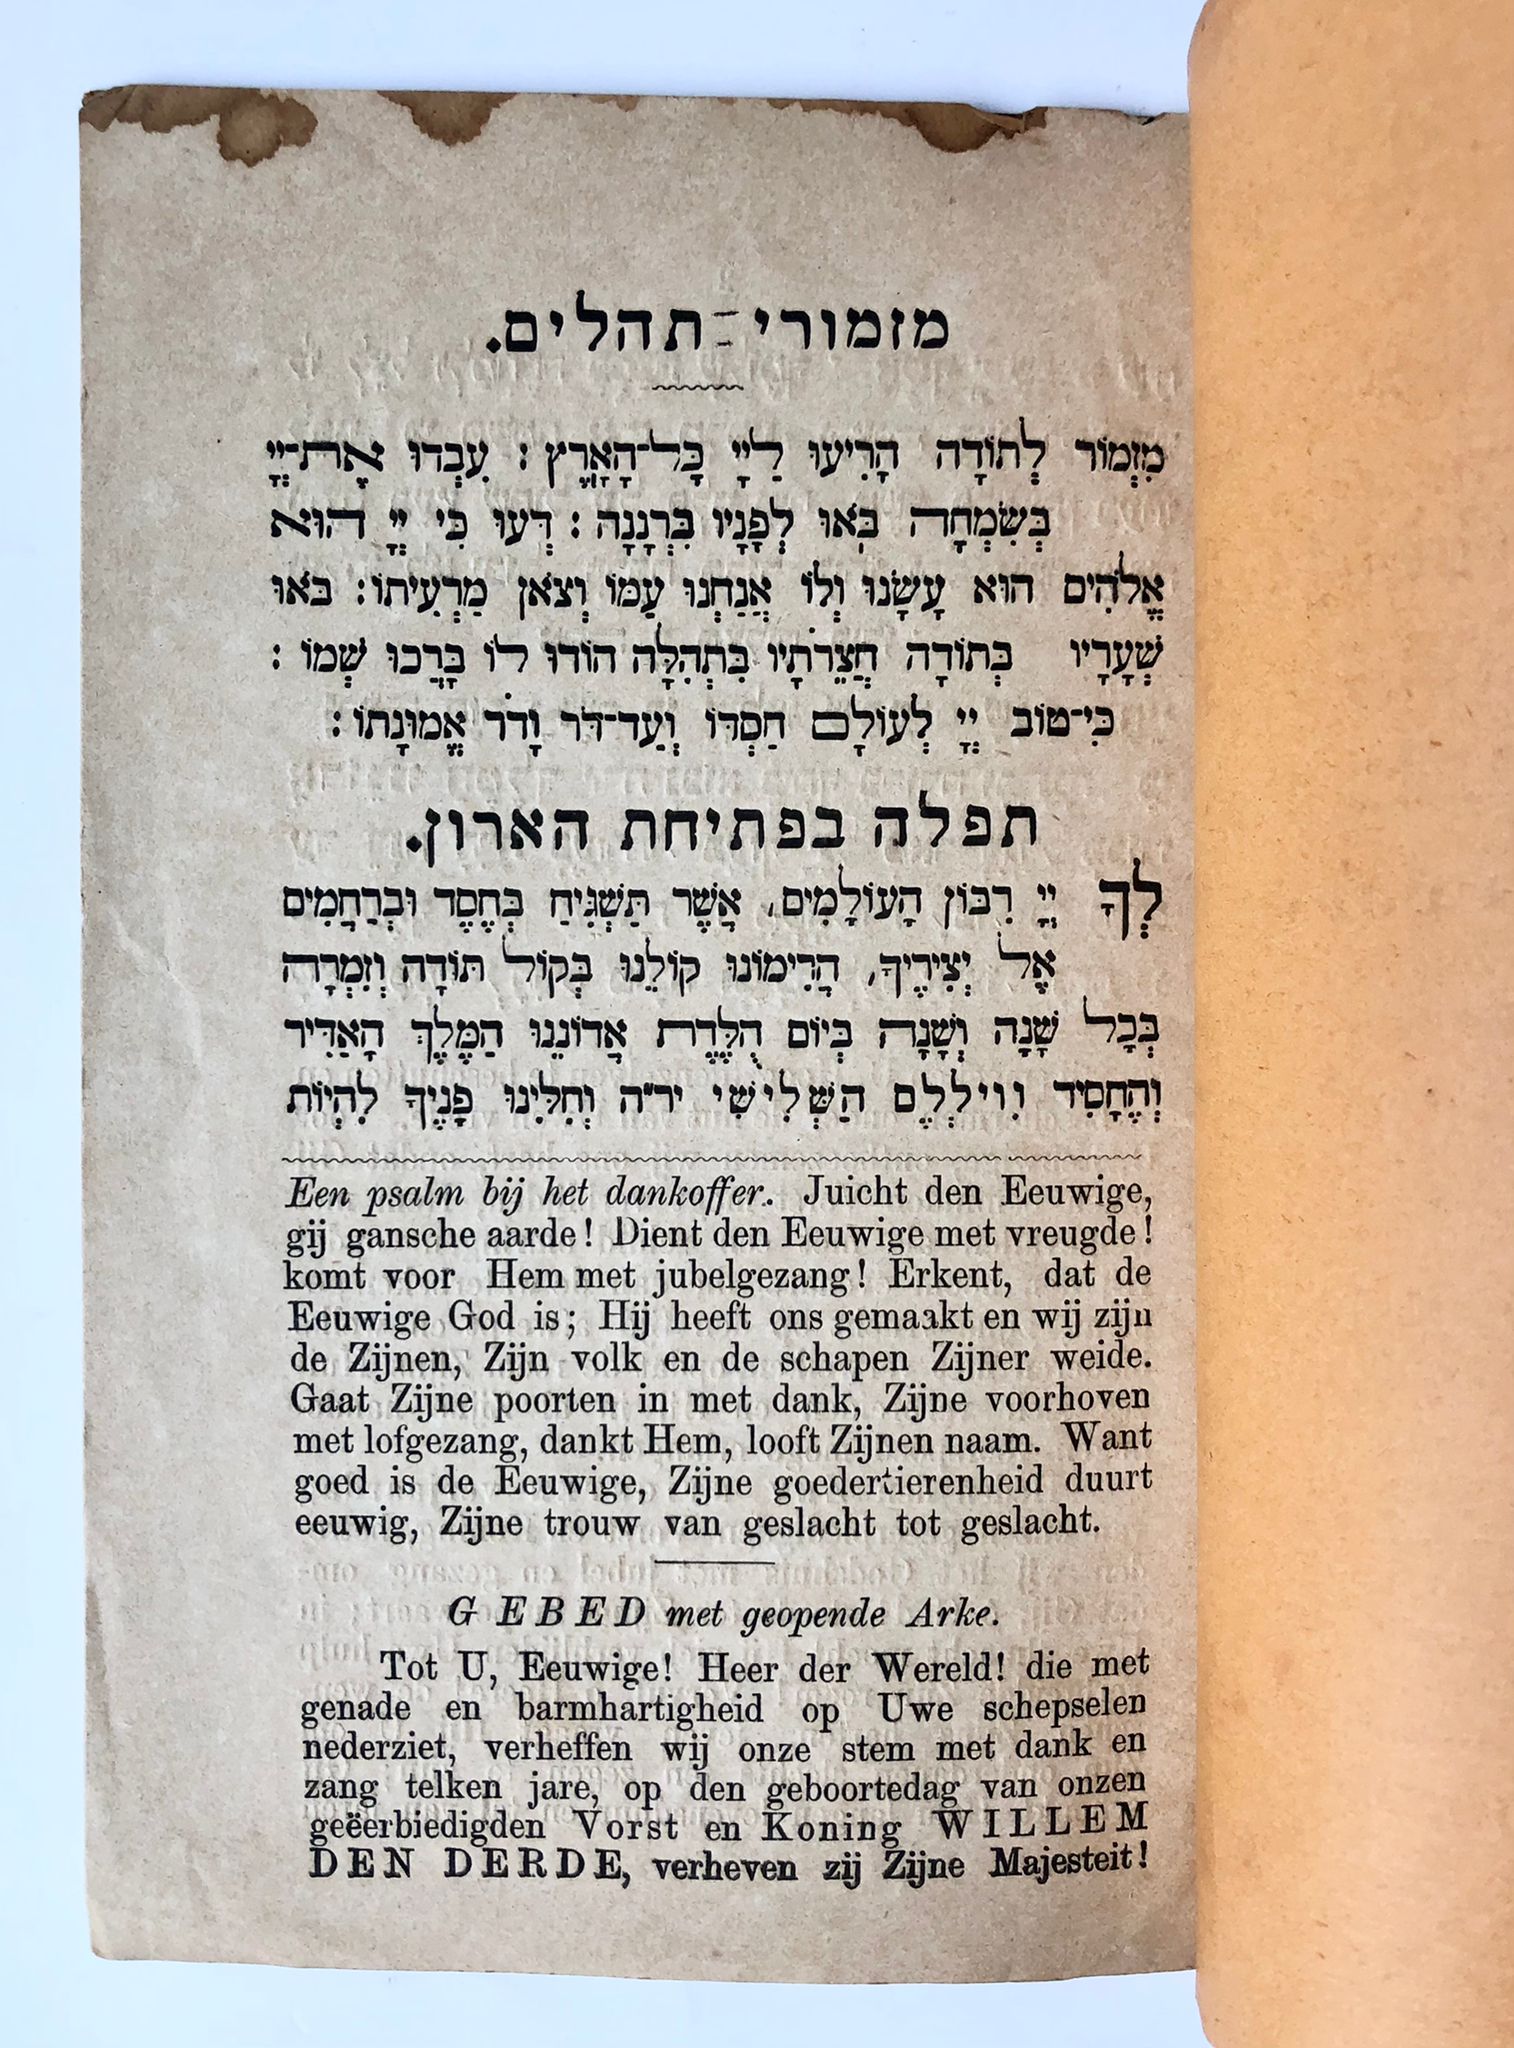 [Printed publicaiton, Judaica, 1887] 'Orde van de buitengewone godsdienstoefening in de Synagogen der Nederlandse Israelische Gemeente te Amsterdam, t.g.v. Z. M.'s 70e verjaardag'. Amsterdam, 1887, 8 pp. printed.